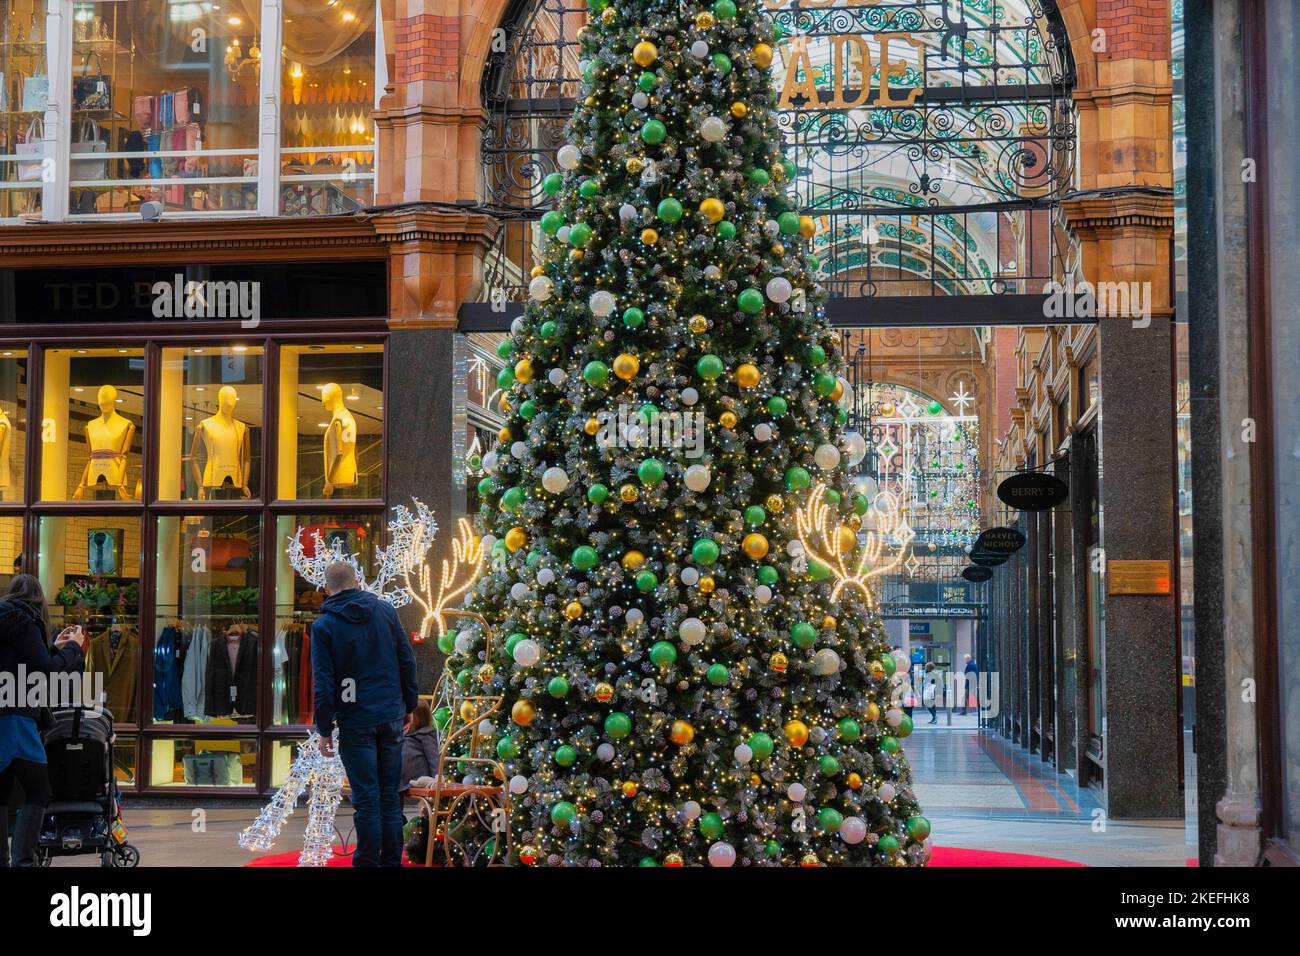 In einer Einkaufspassage im Victoria Quarter, Leeds, England, stand ein Einkäufer neben einem hohen Weihnachtsbaum, der mit großen Kugeln dekoriert war. Stockfoto